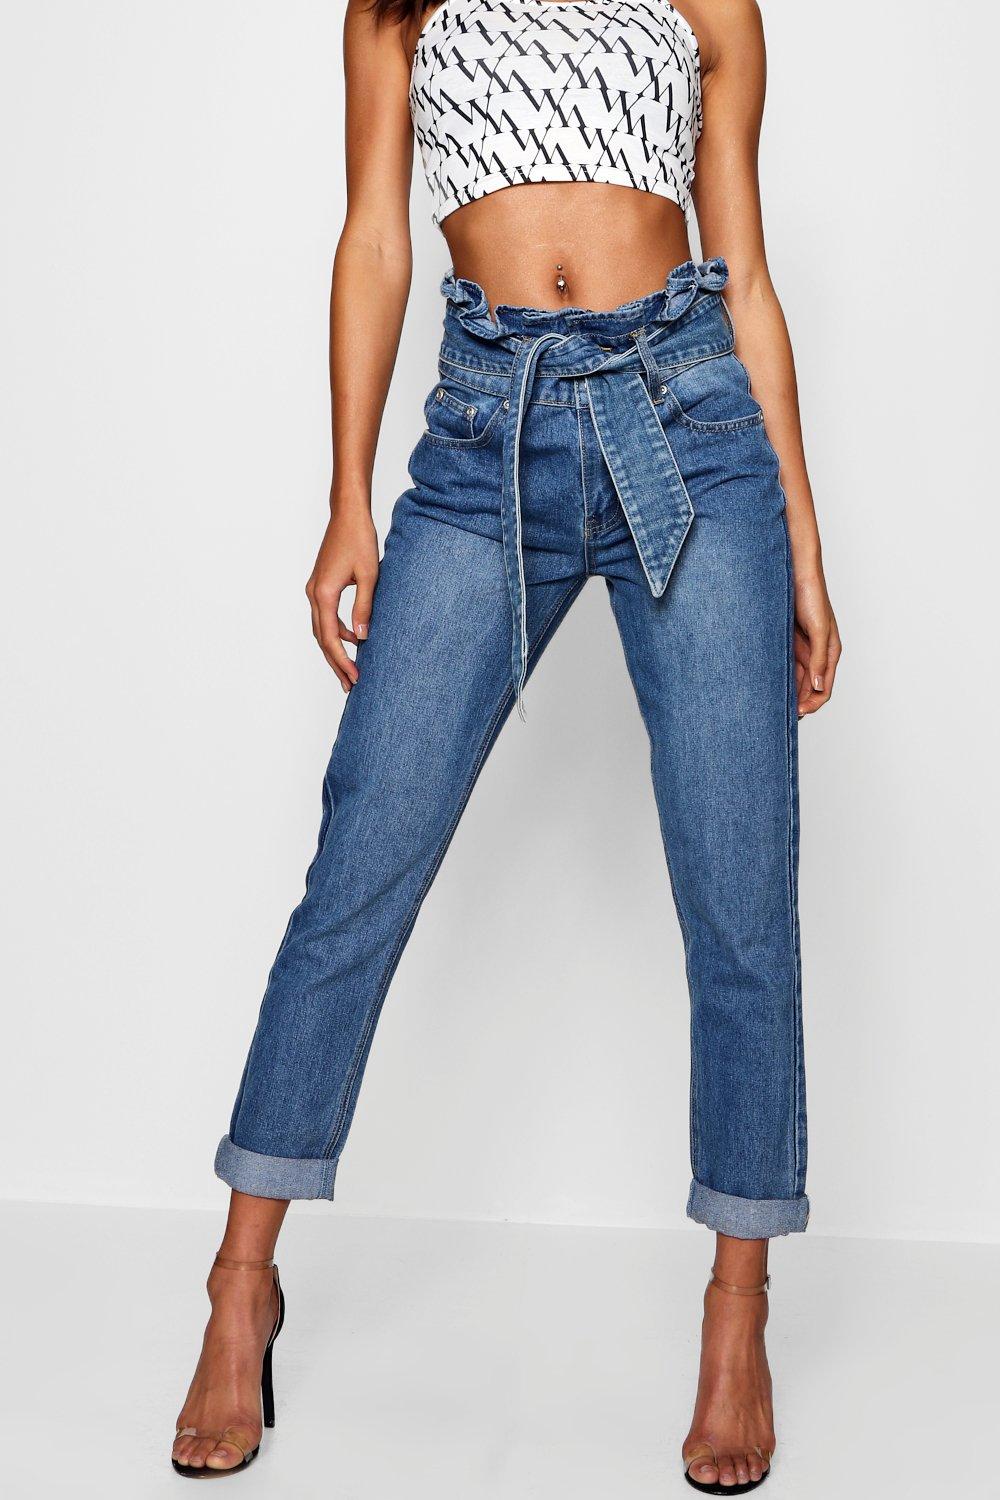 burlington plus size jeans